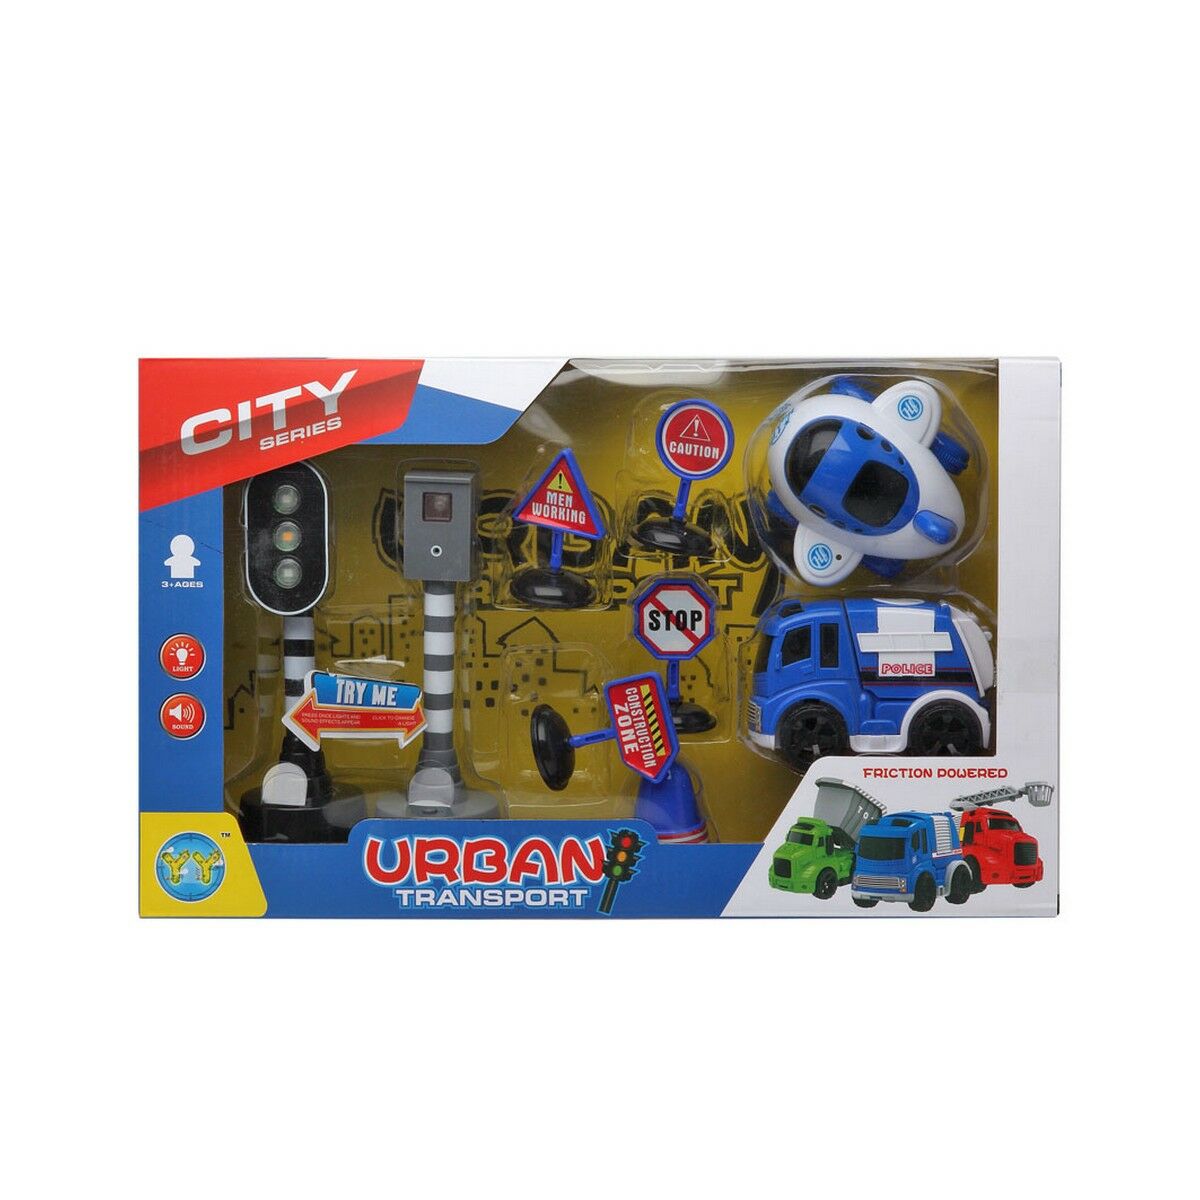 Voertuig Speelset City Series Police 38 x 22 cm